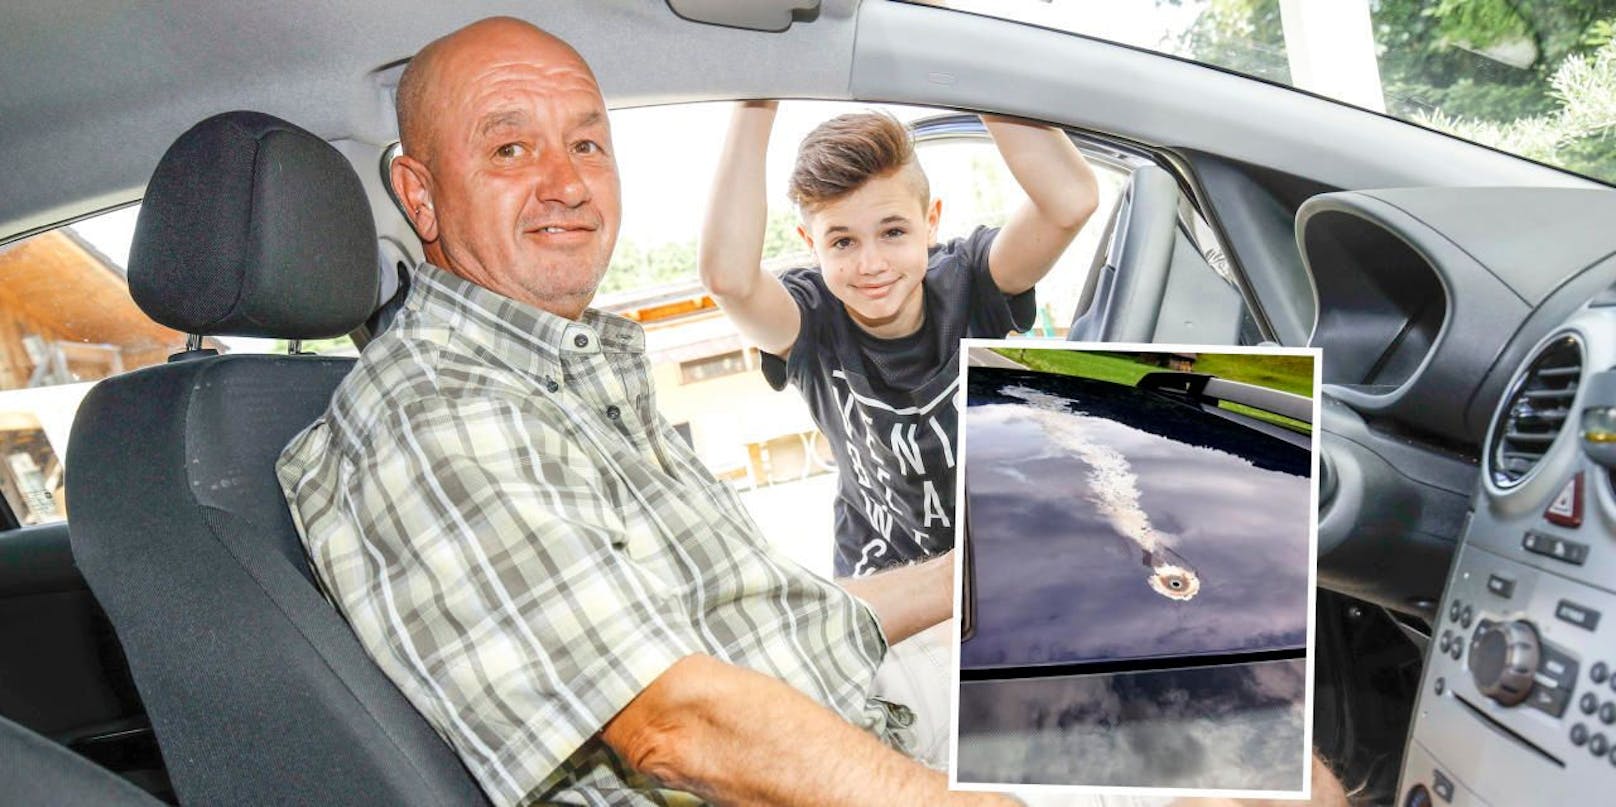 Wolfgang Neumann und sein Sohn (14) waren mit dem Auto unterwegs, als ein Blitz in den Wagen einschlug.